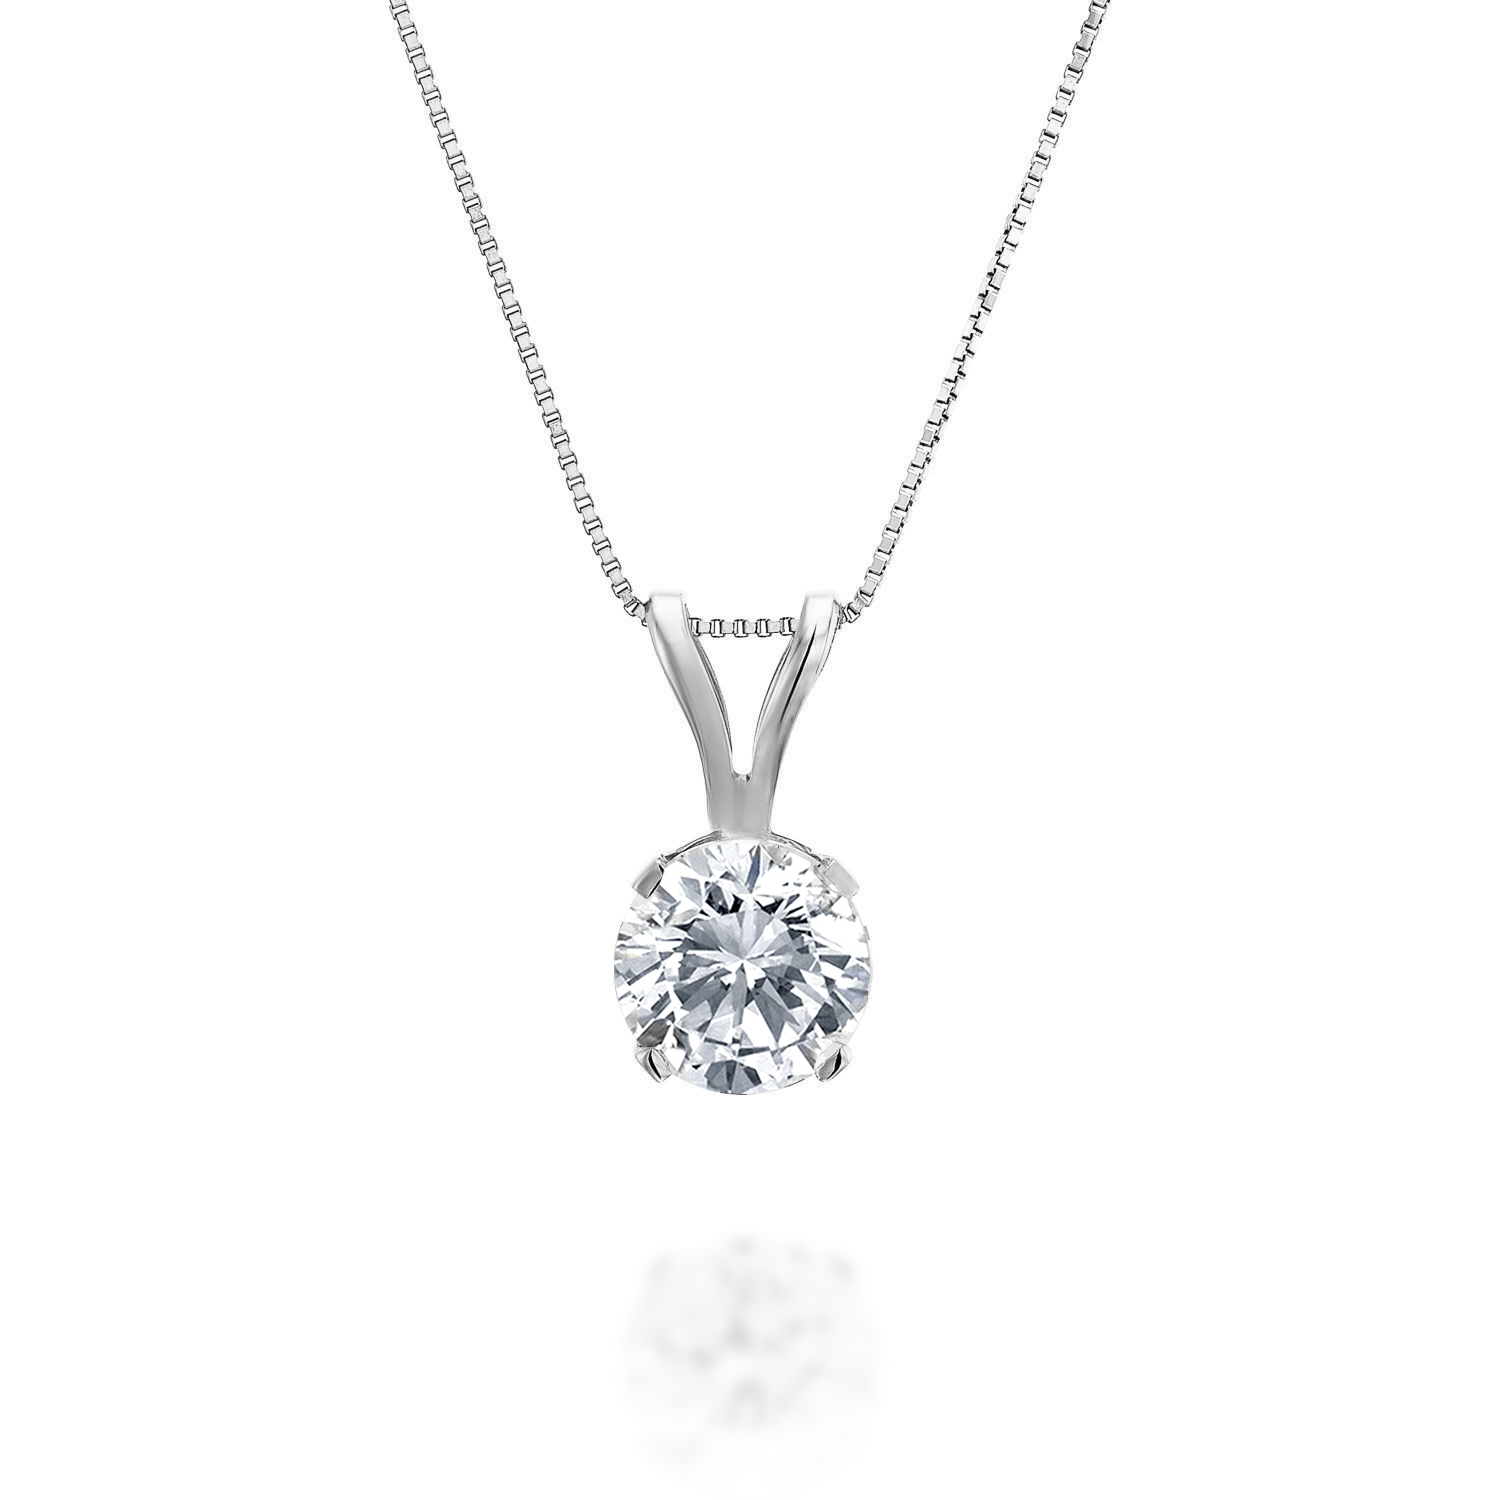 3 Carat Diamond Pendant Necklace In Platinum - Round Cut